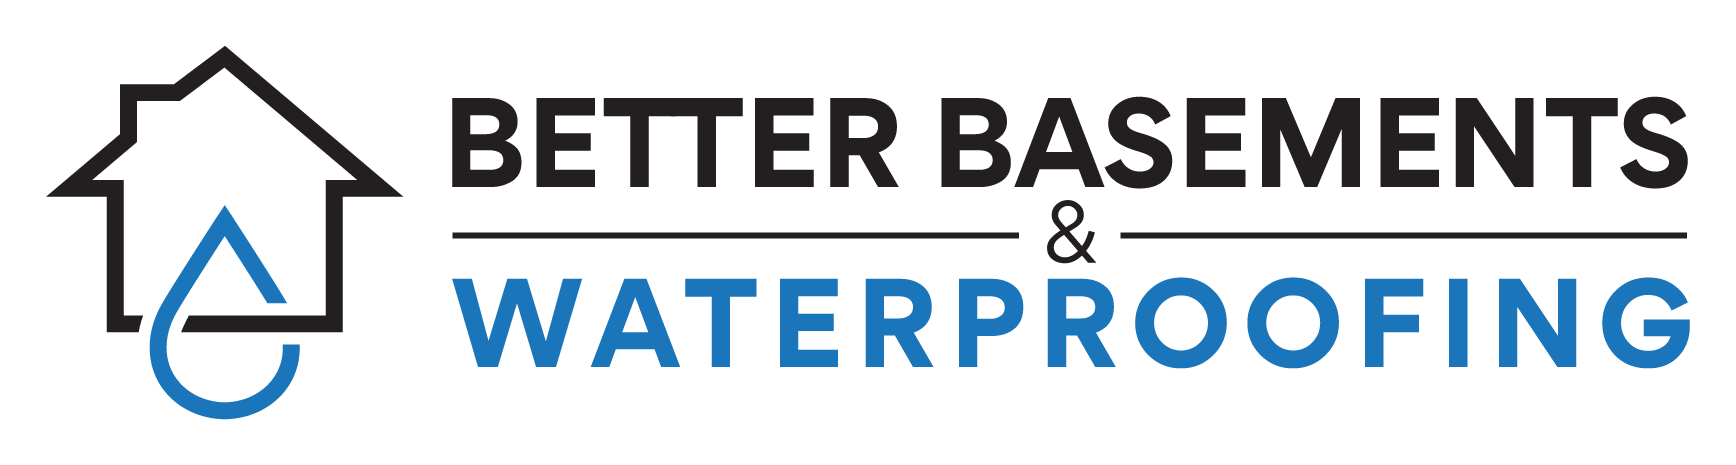 Better Basements & Waterproofing logo